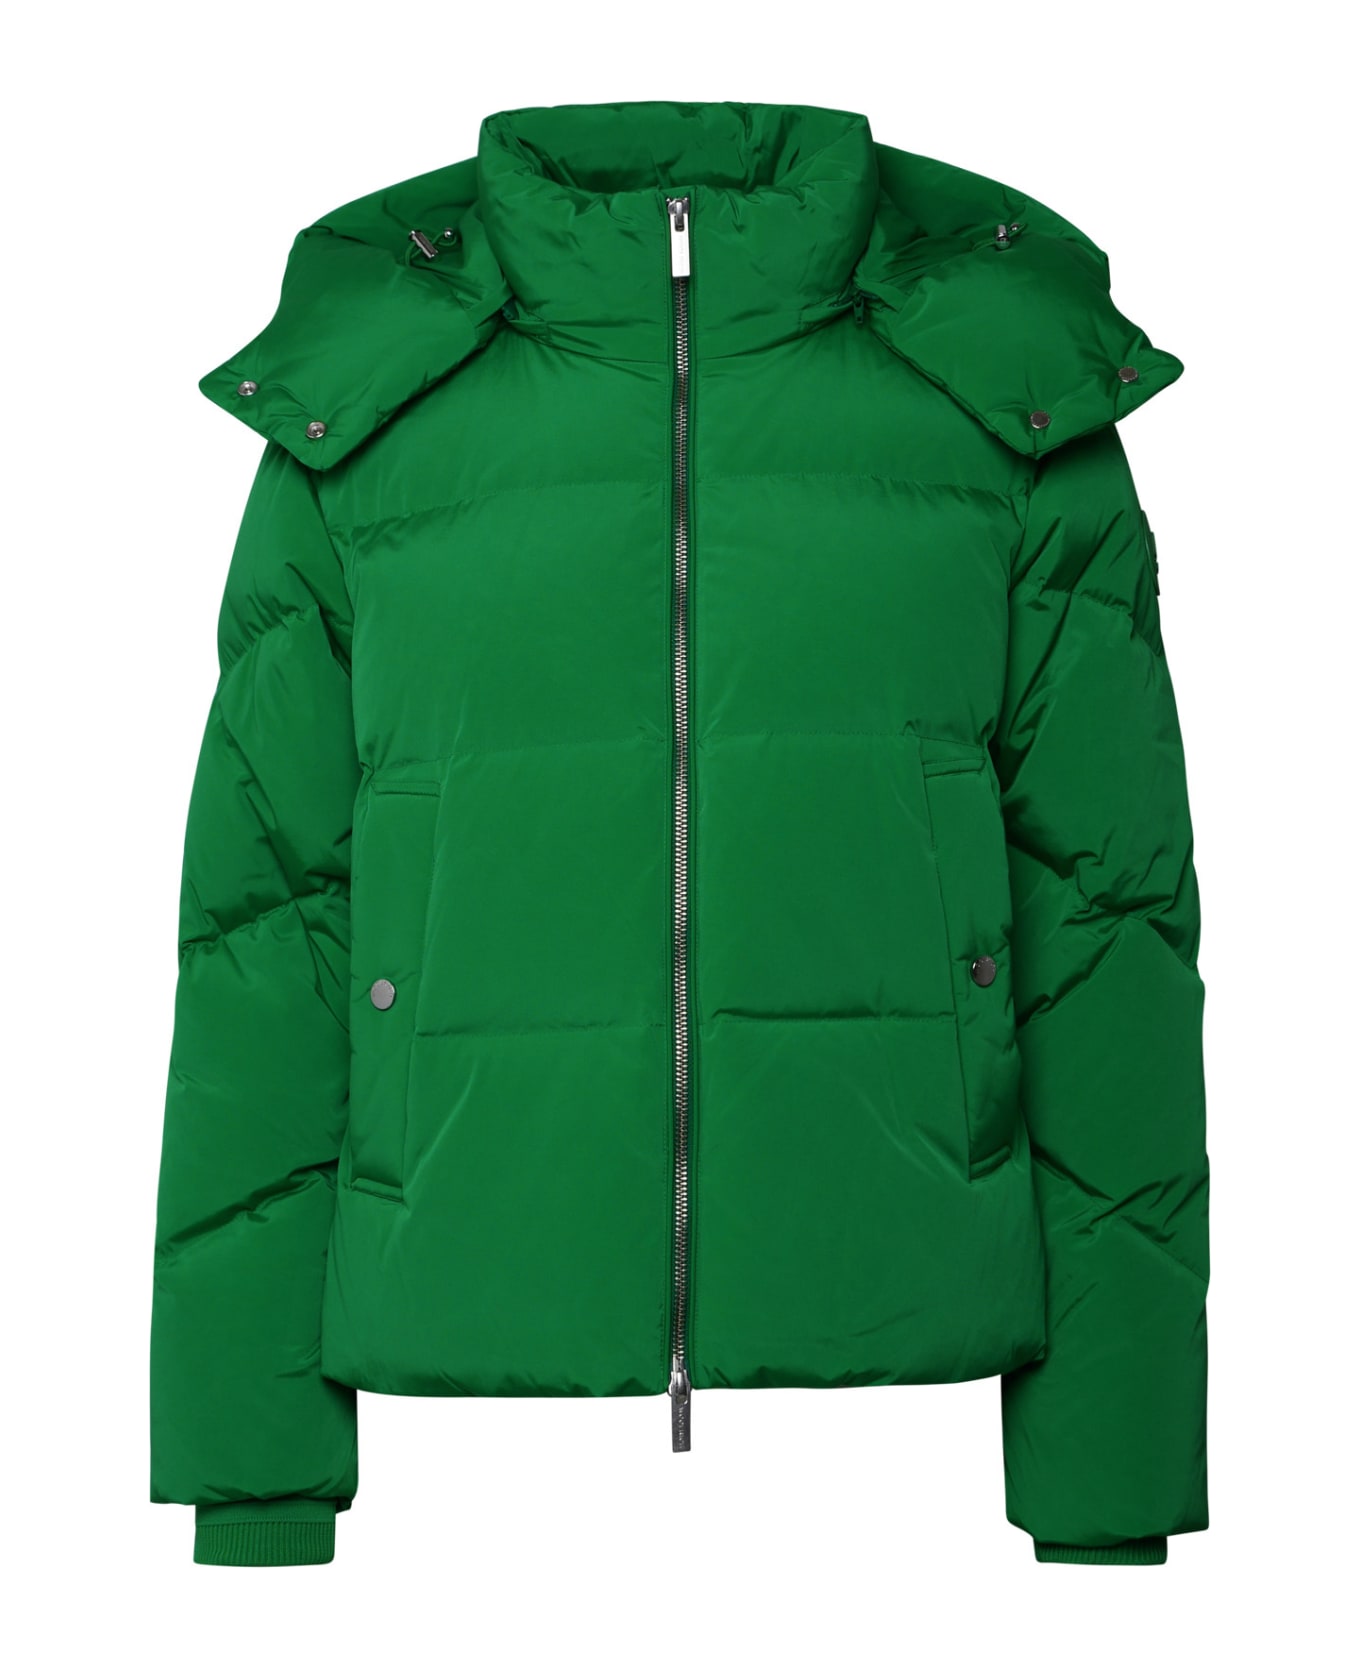 Woolrich Alsea Green Nylon Down Jacket - KELLY GREEN